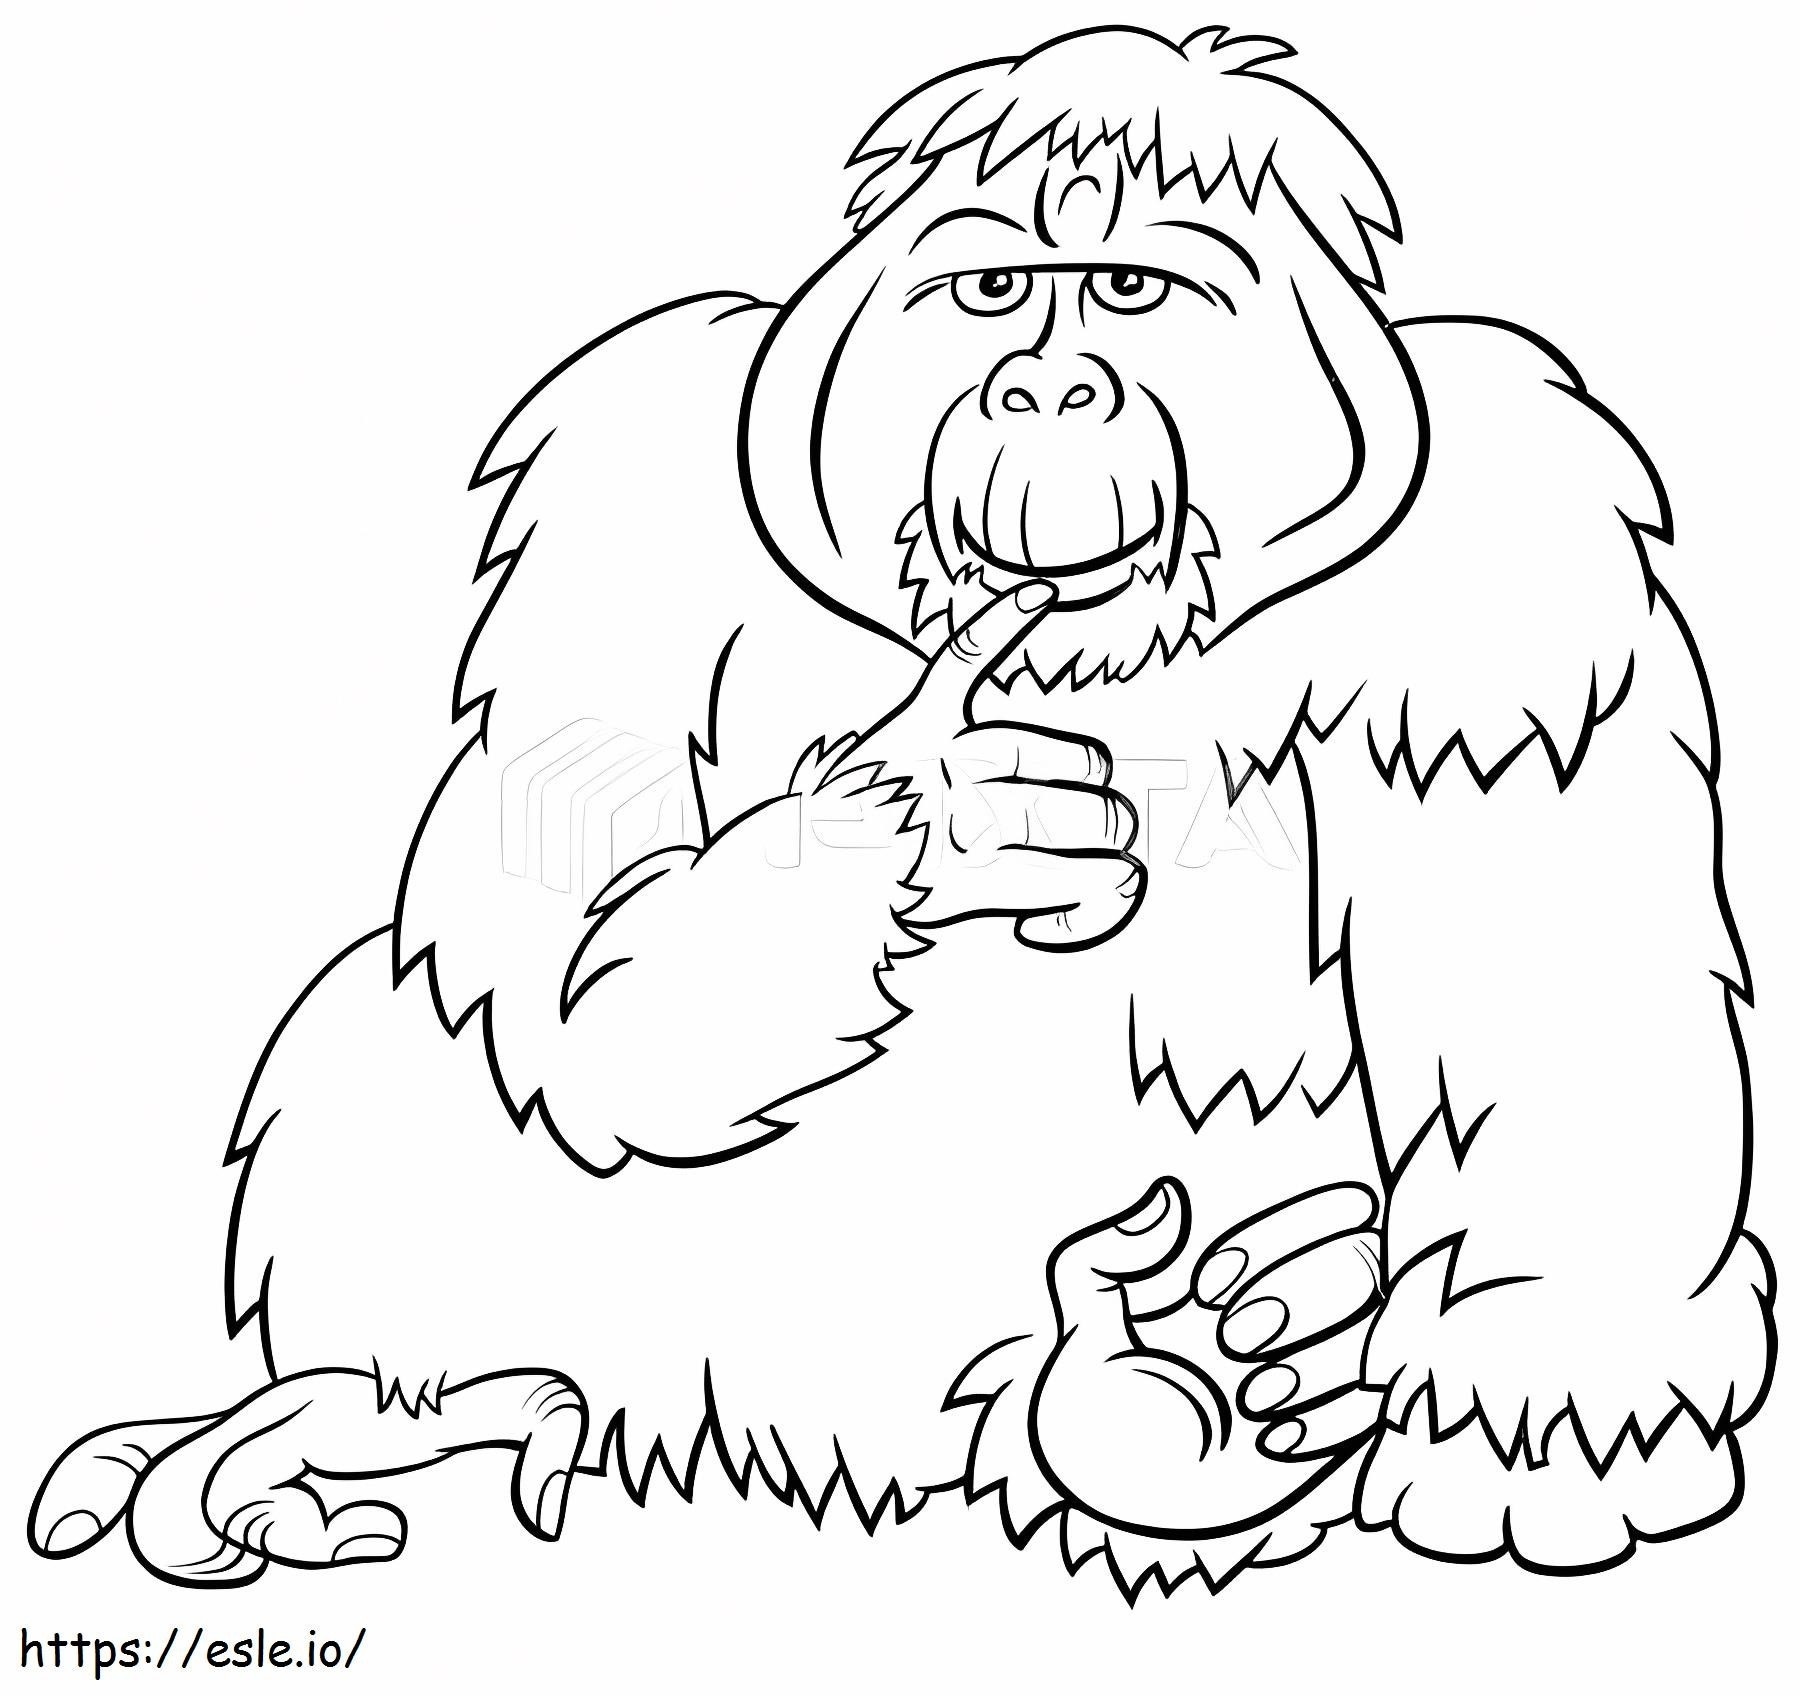 Sumatran Orangutan coloring page